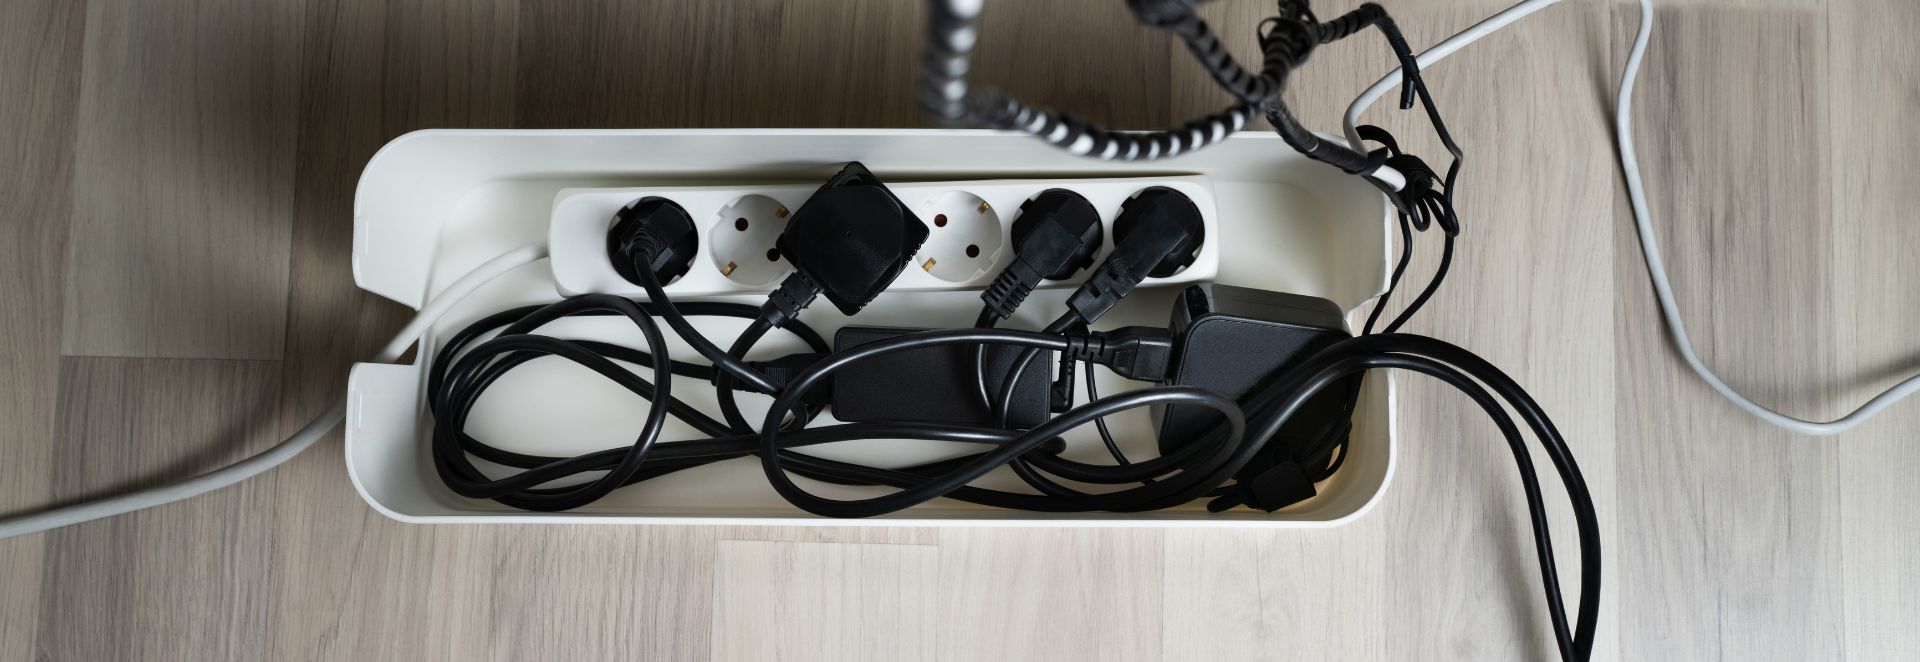 De beste manieren om kabels op kantoor te managen